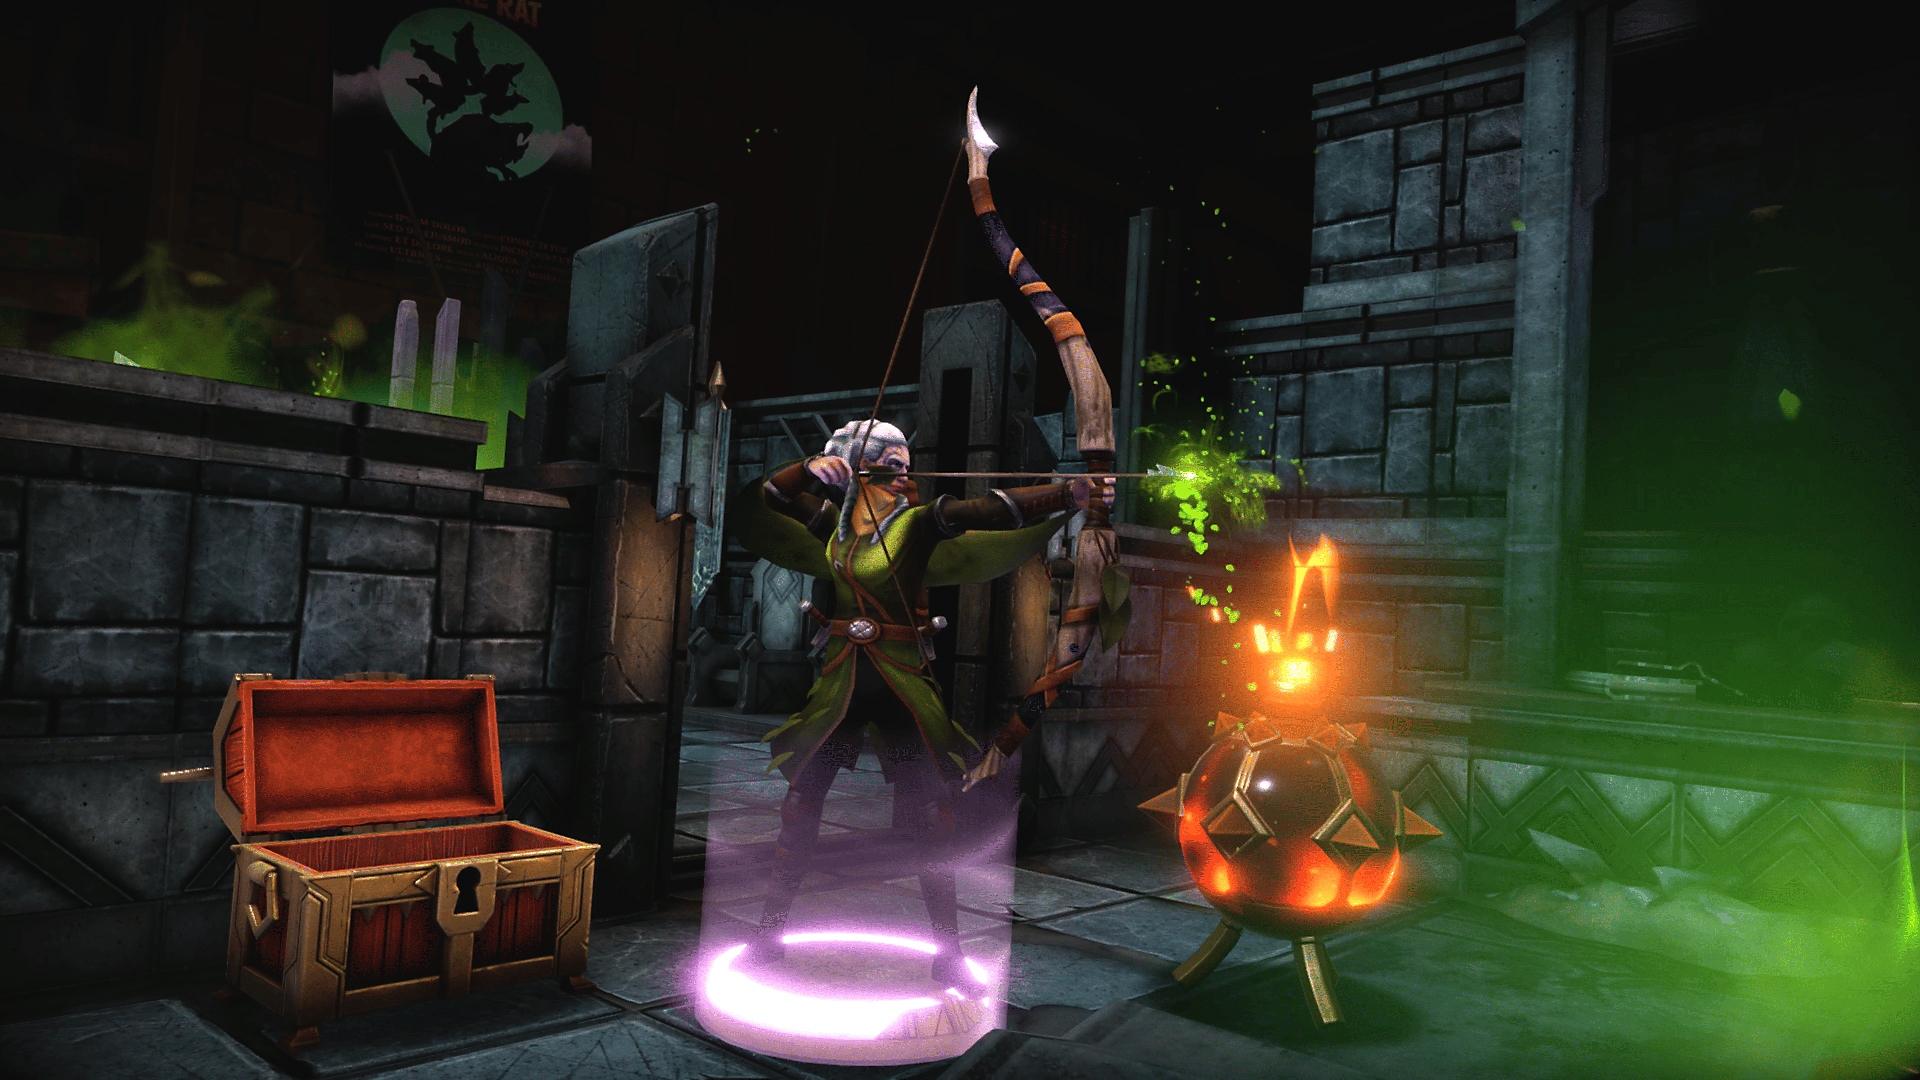 Screenshot von Demeo, der einen Charakter zeigt, der einen Bogen spannt, um einen Pfeil abzuschießen